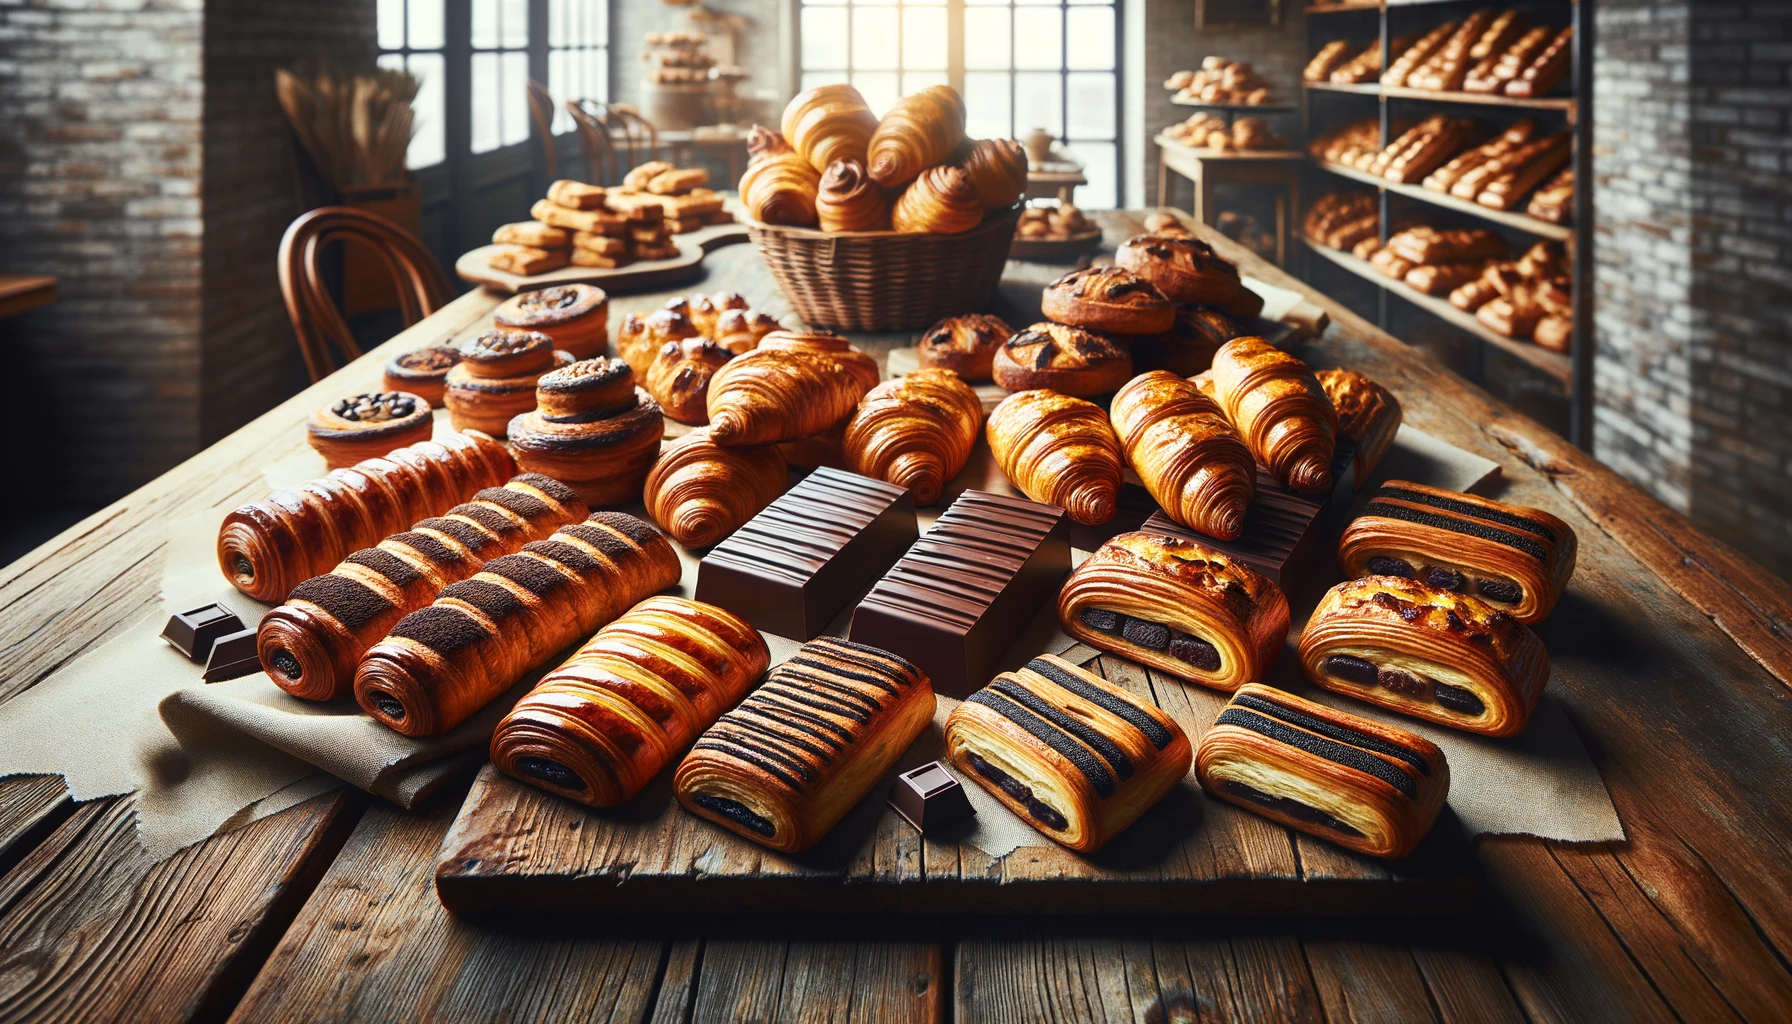 pains au chocolat français classique présentés dans une vitrine de boulangeries